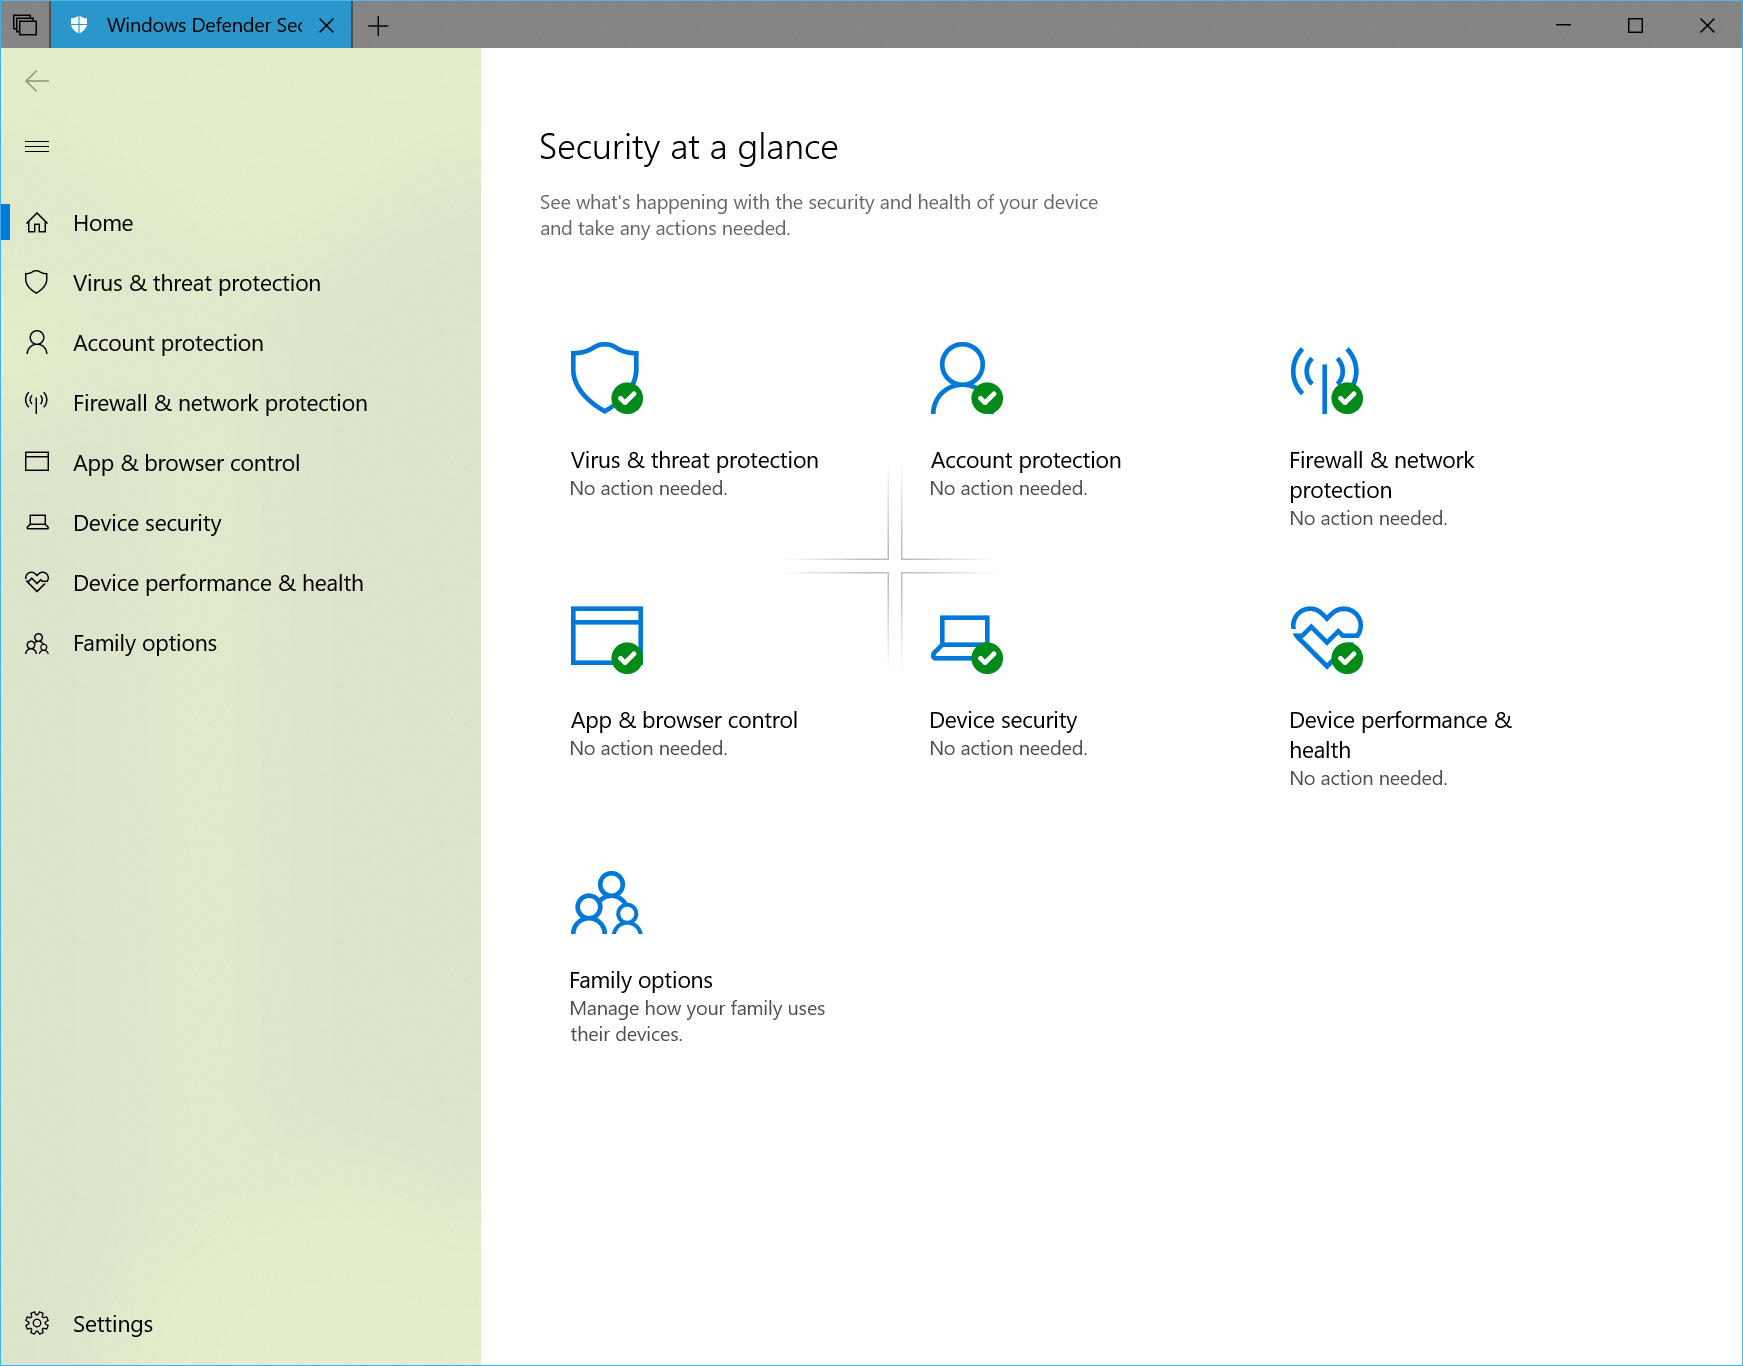 Microsoft udostępnia nową wersję Windows 10 Insider Preview Build 17650 (RS5) Skip Ahead build dla Insiderów